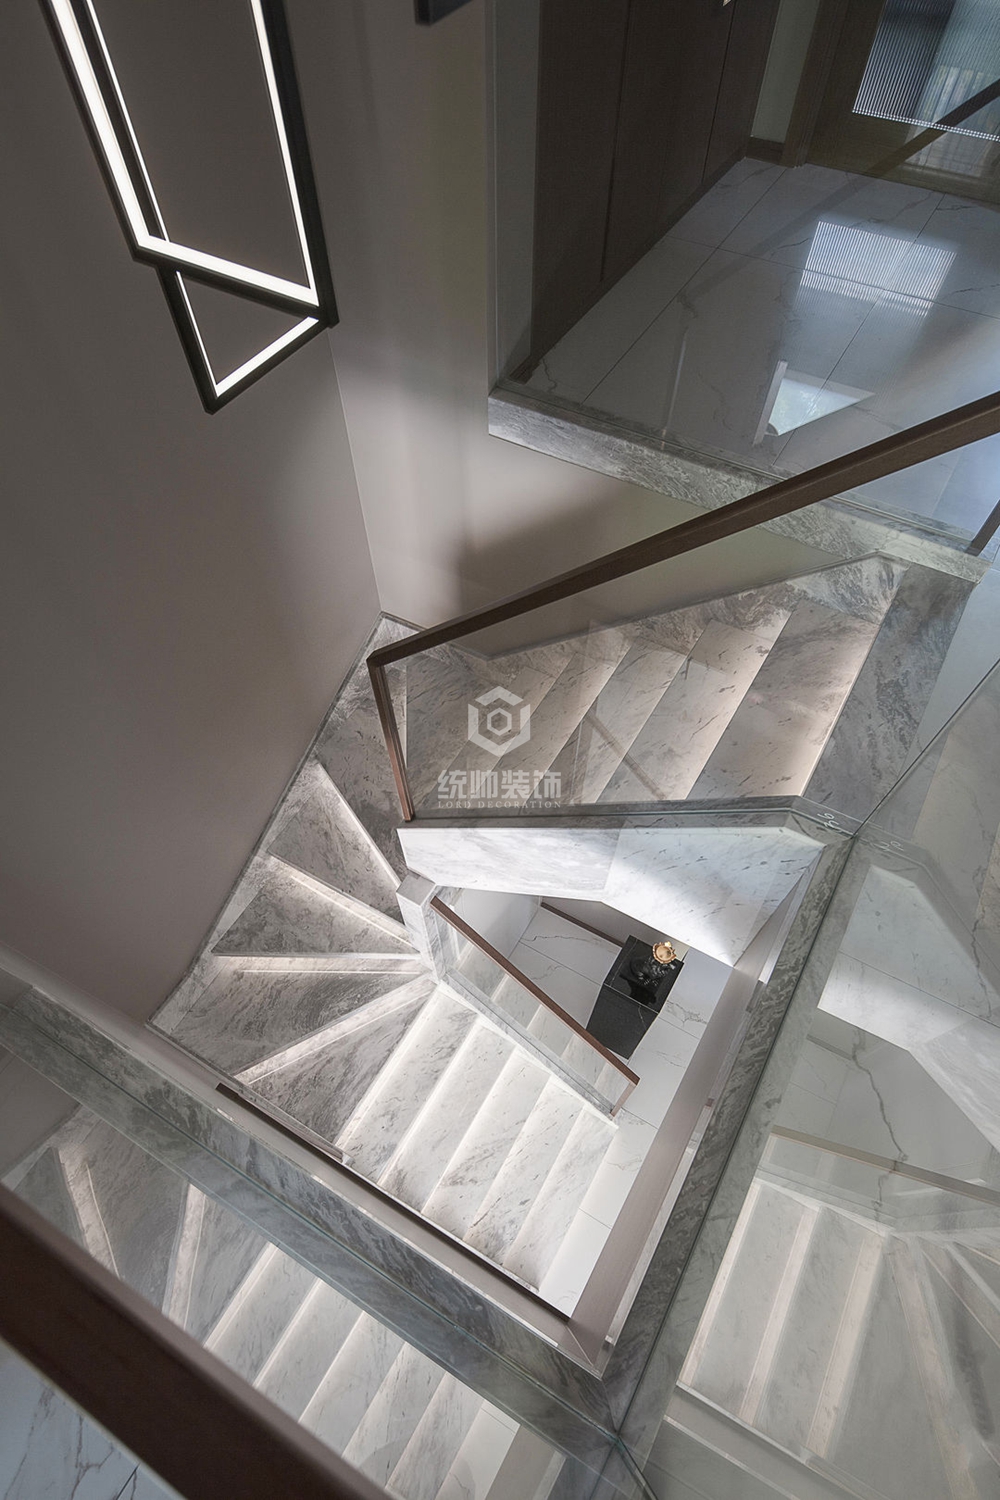 嘉定區澳麗印象家園 130平現代簡約樓梯間裝修效果圖